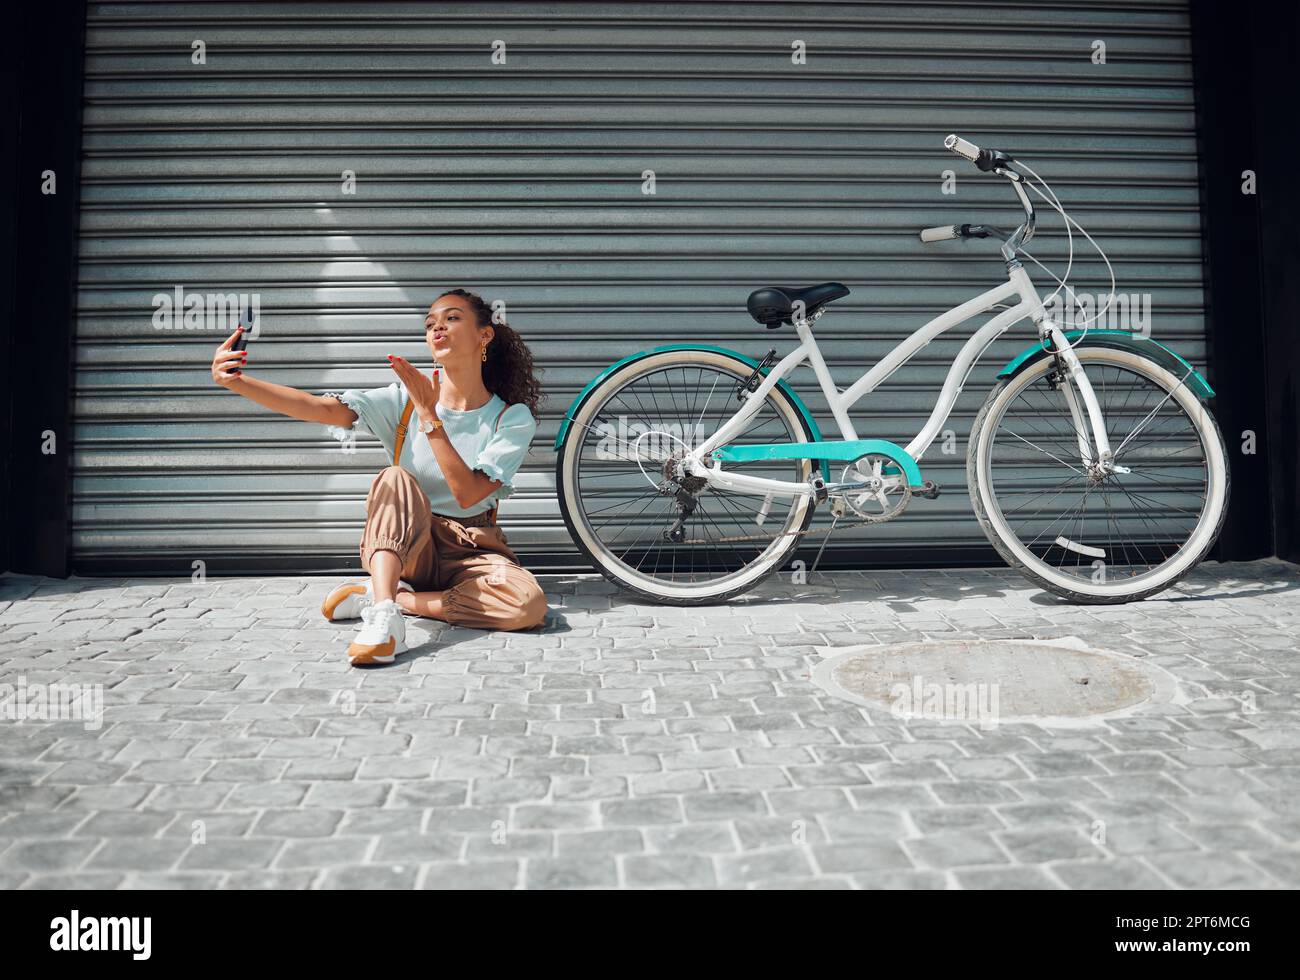 Bicicletta, strada e donna che scattano un selfie in una città che soffia un bacio in foto o foto in estate all'aperto. Libertà, moto e giovane ragazza che crea phon Foto Stock